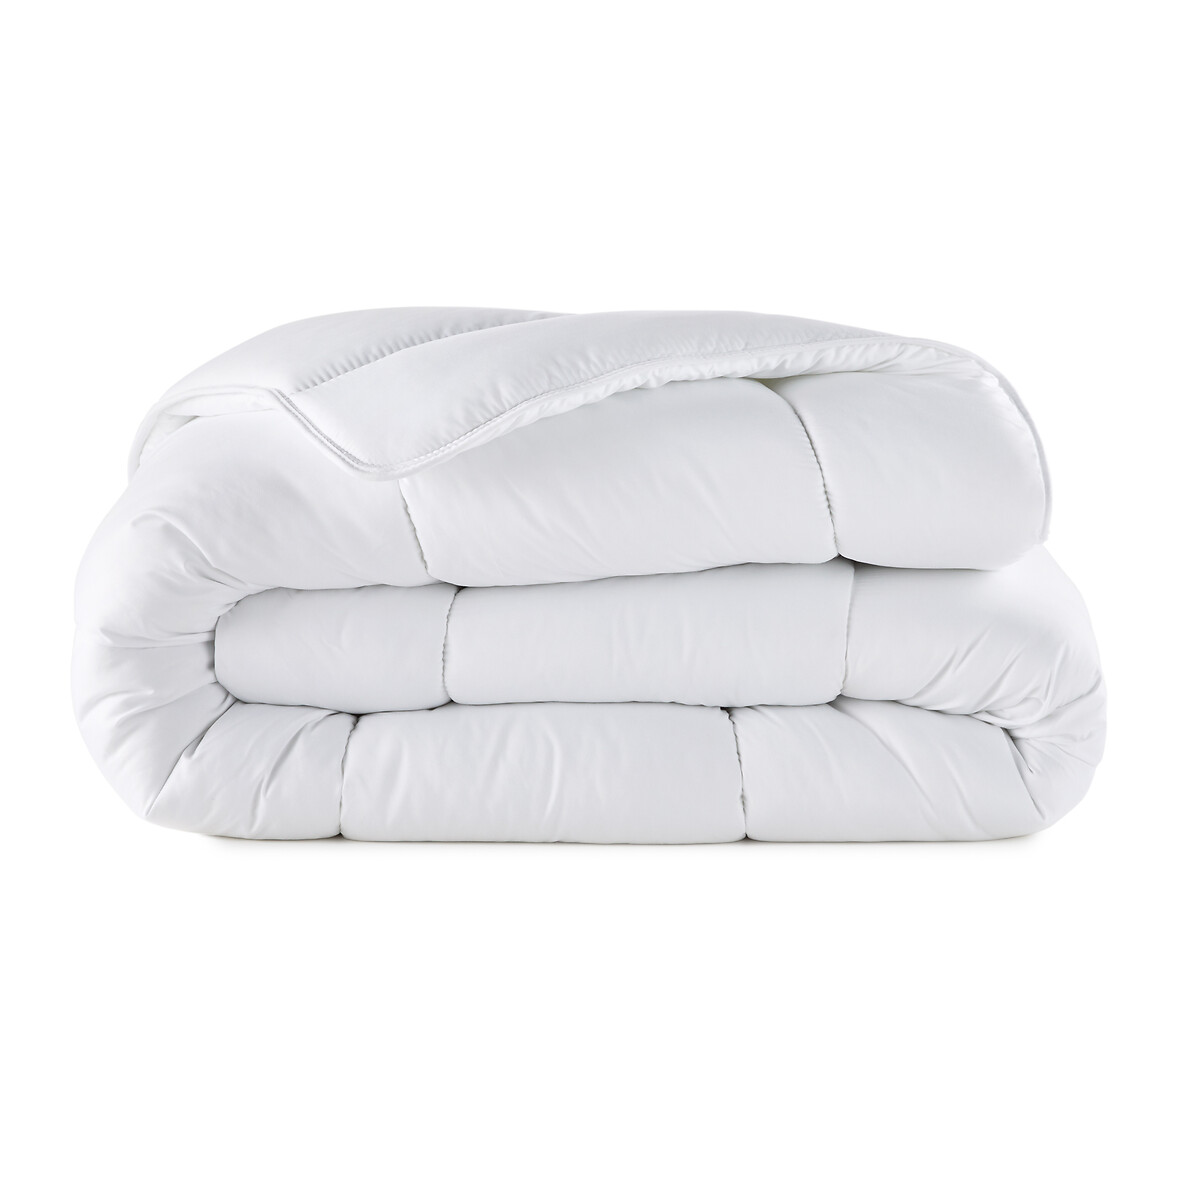 Одеяло La Redoute Синтетическое с обработкой BI-OME 500 гм 260 x 240 см белый, размер 260 x 240 см - фото 2